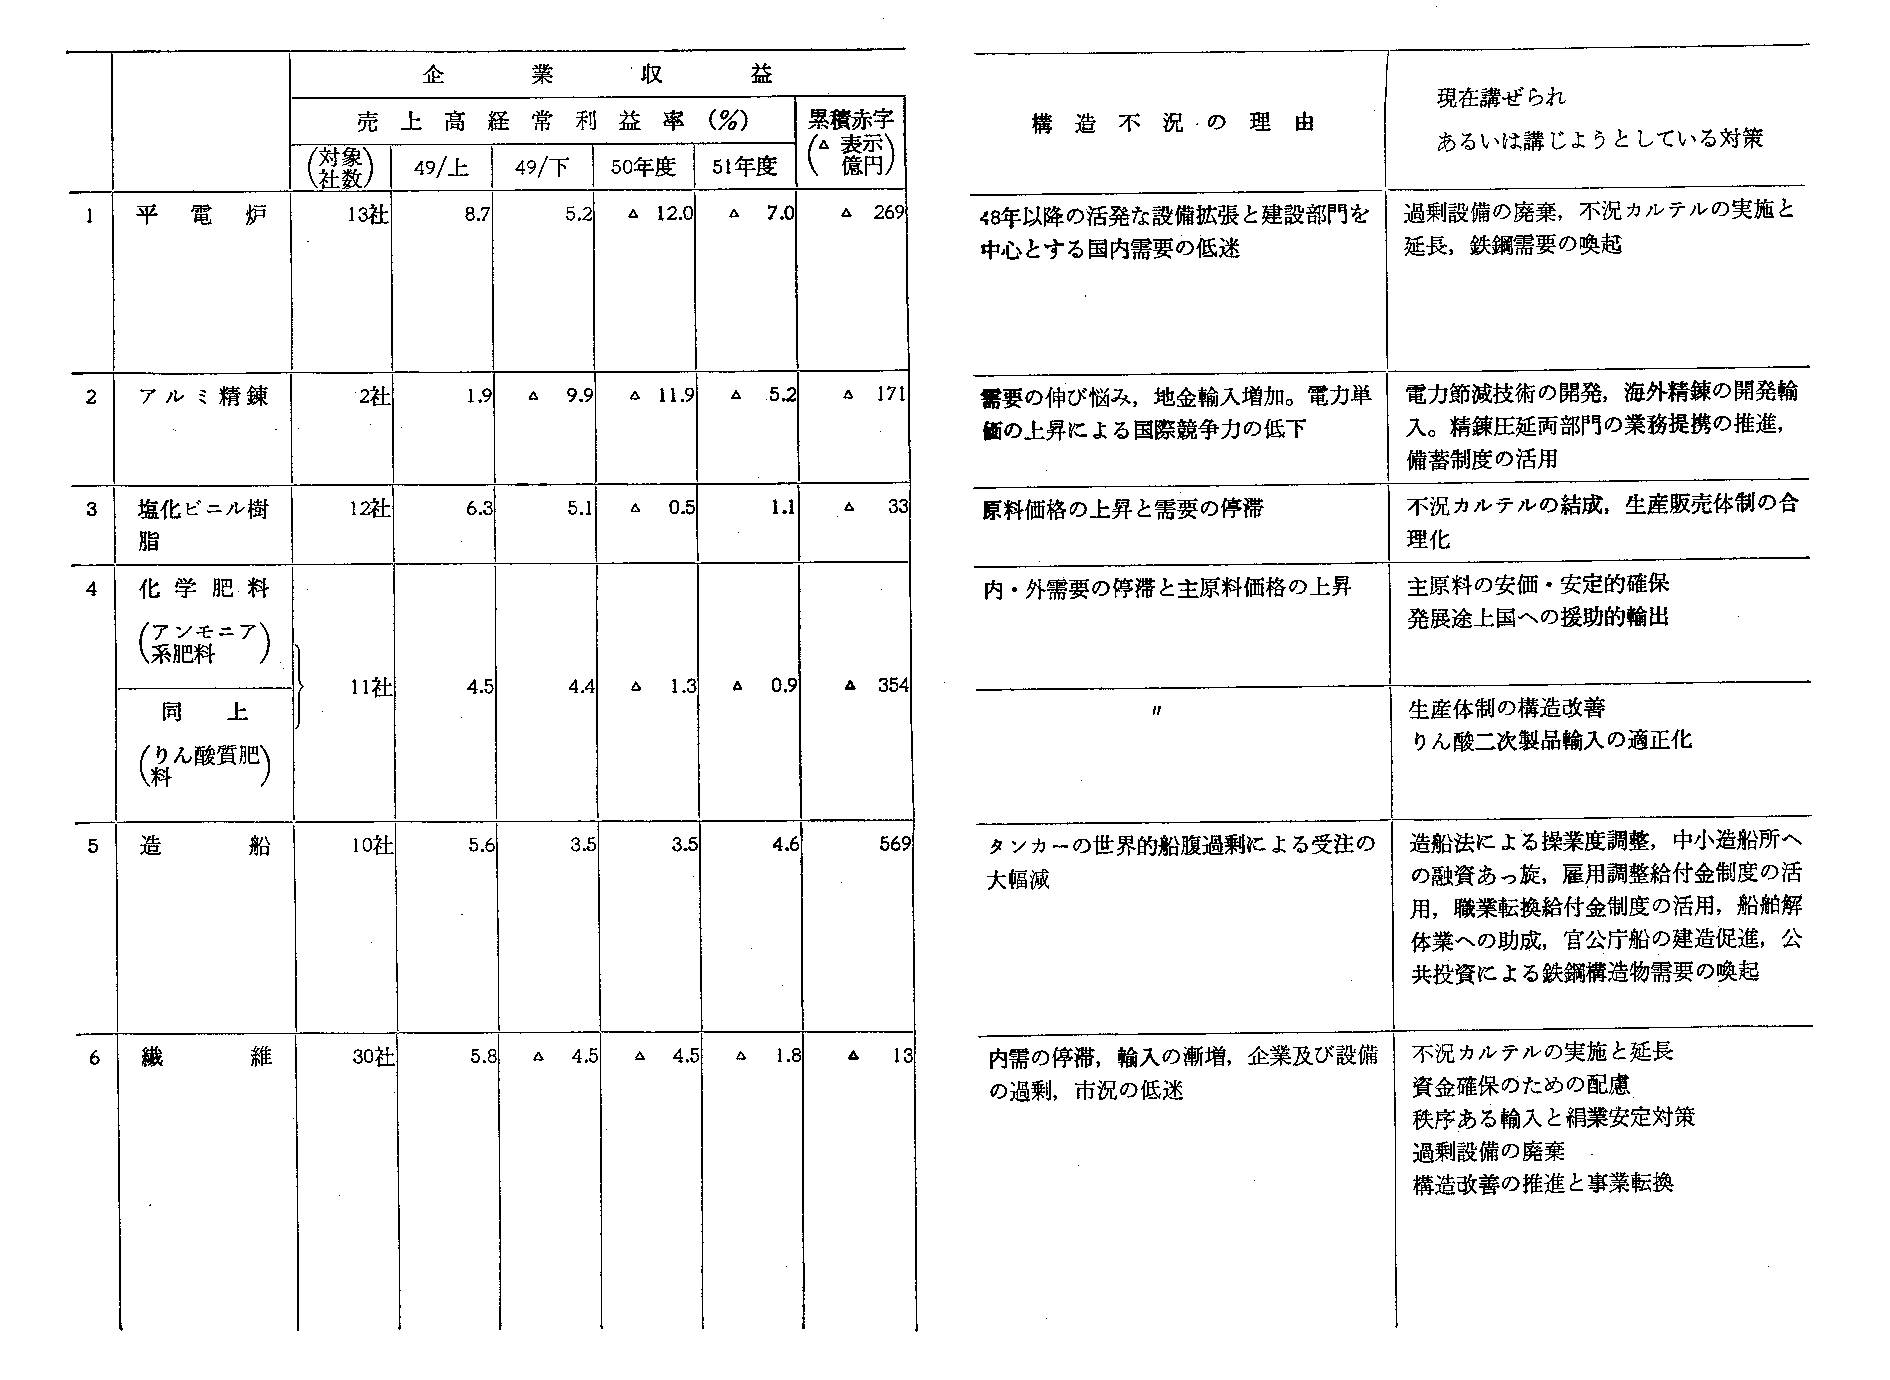 第II-4-6表　主な構造的不況業種(11業種)